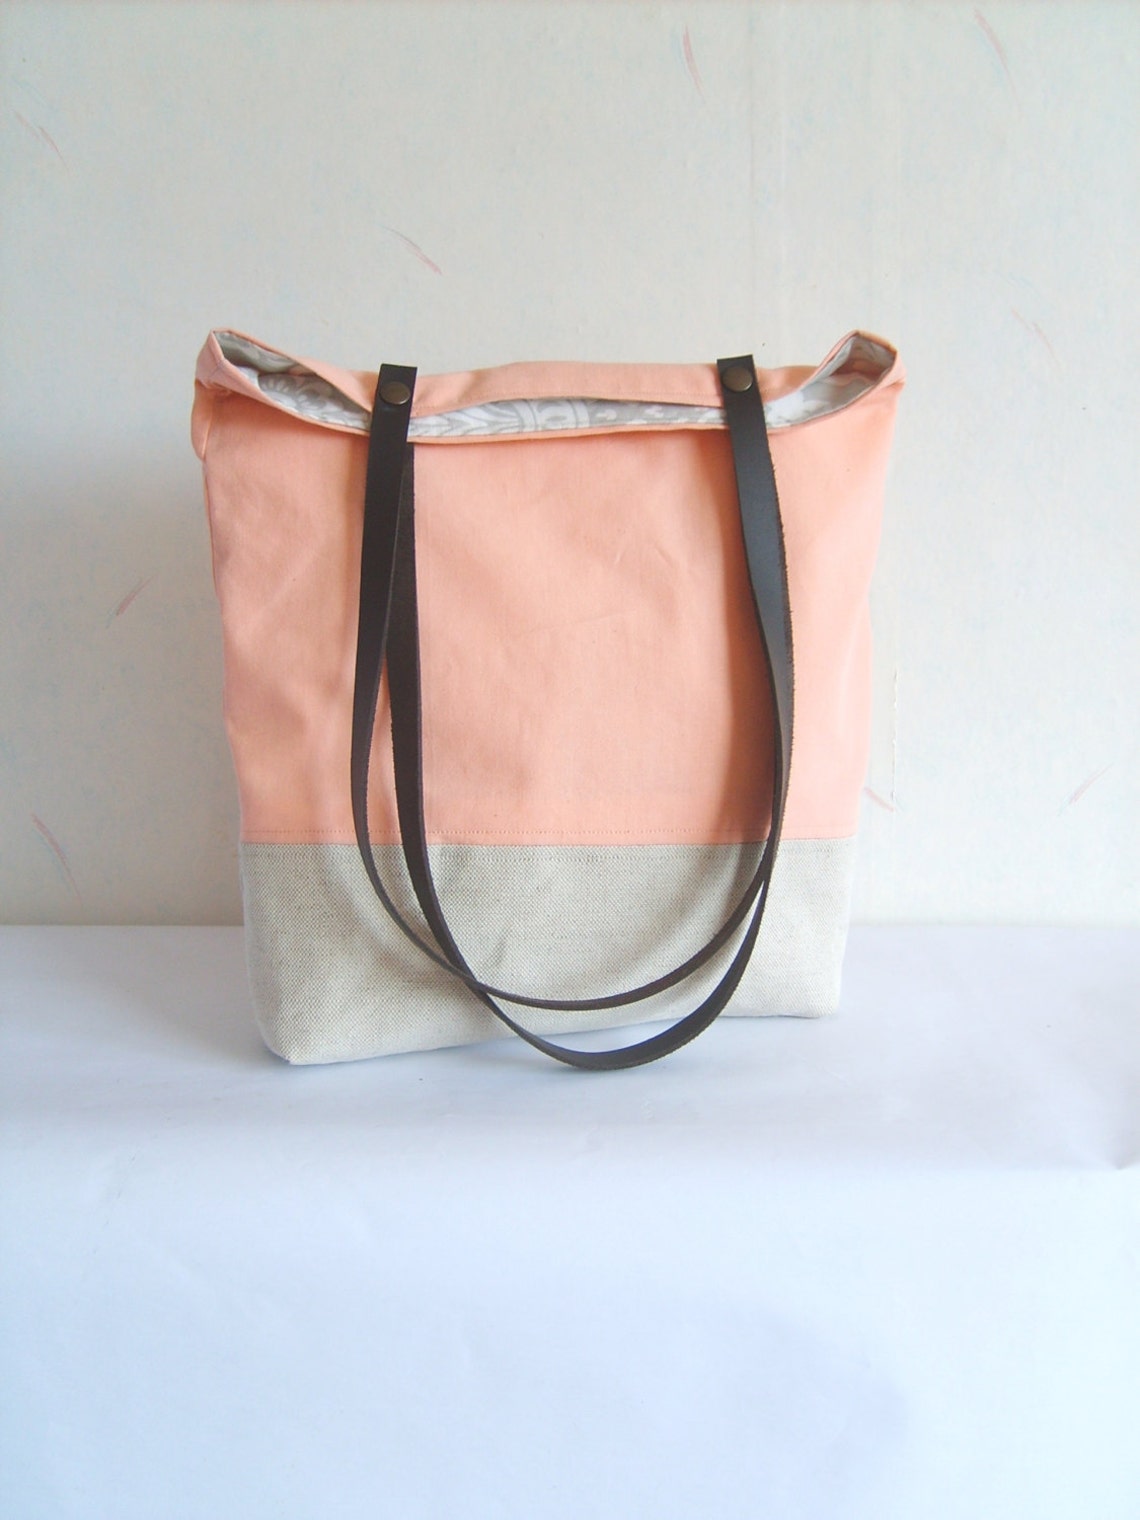 Peach Tote Salmon Pink Bag Leather Straps Colorblock Tote - Etsy DA2